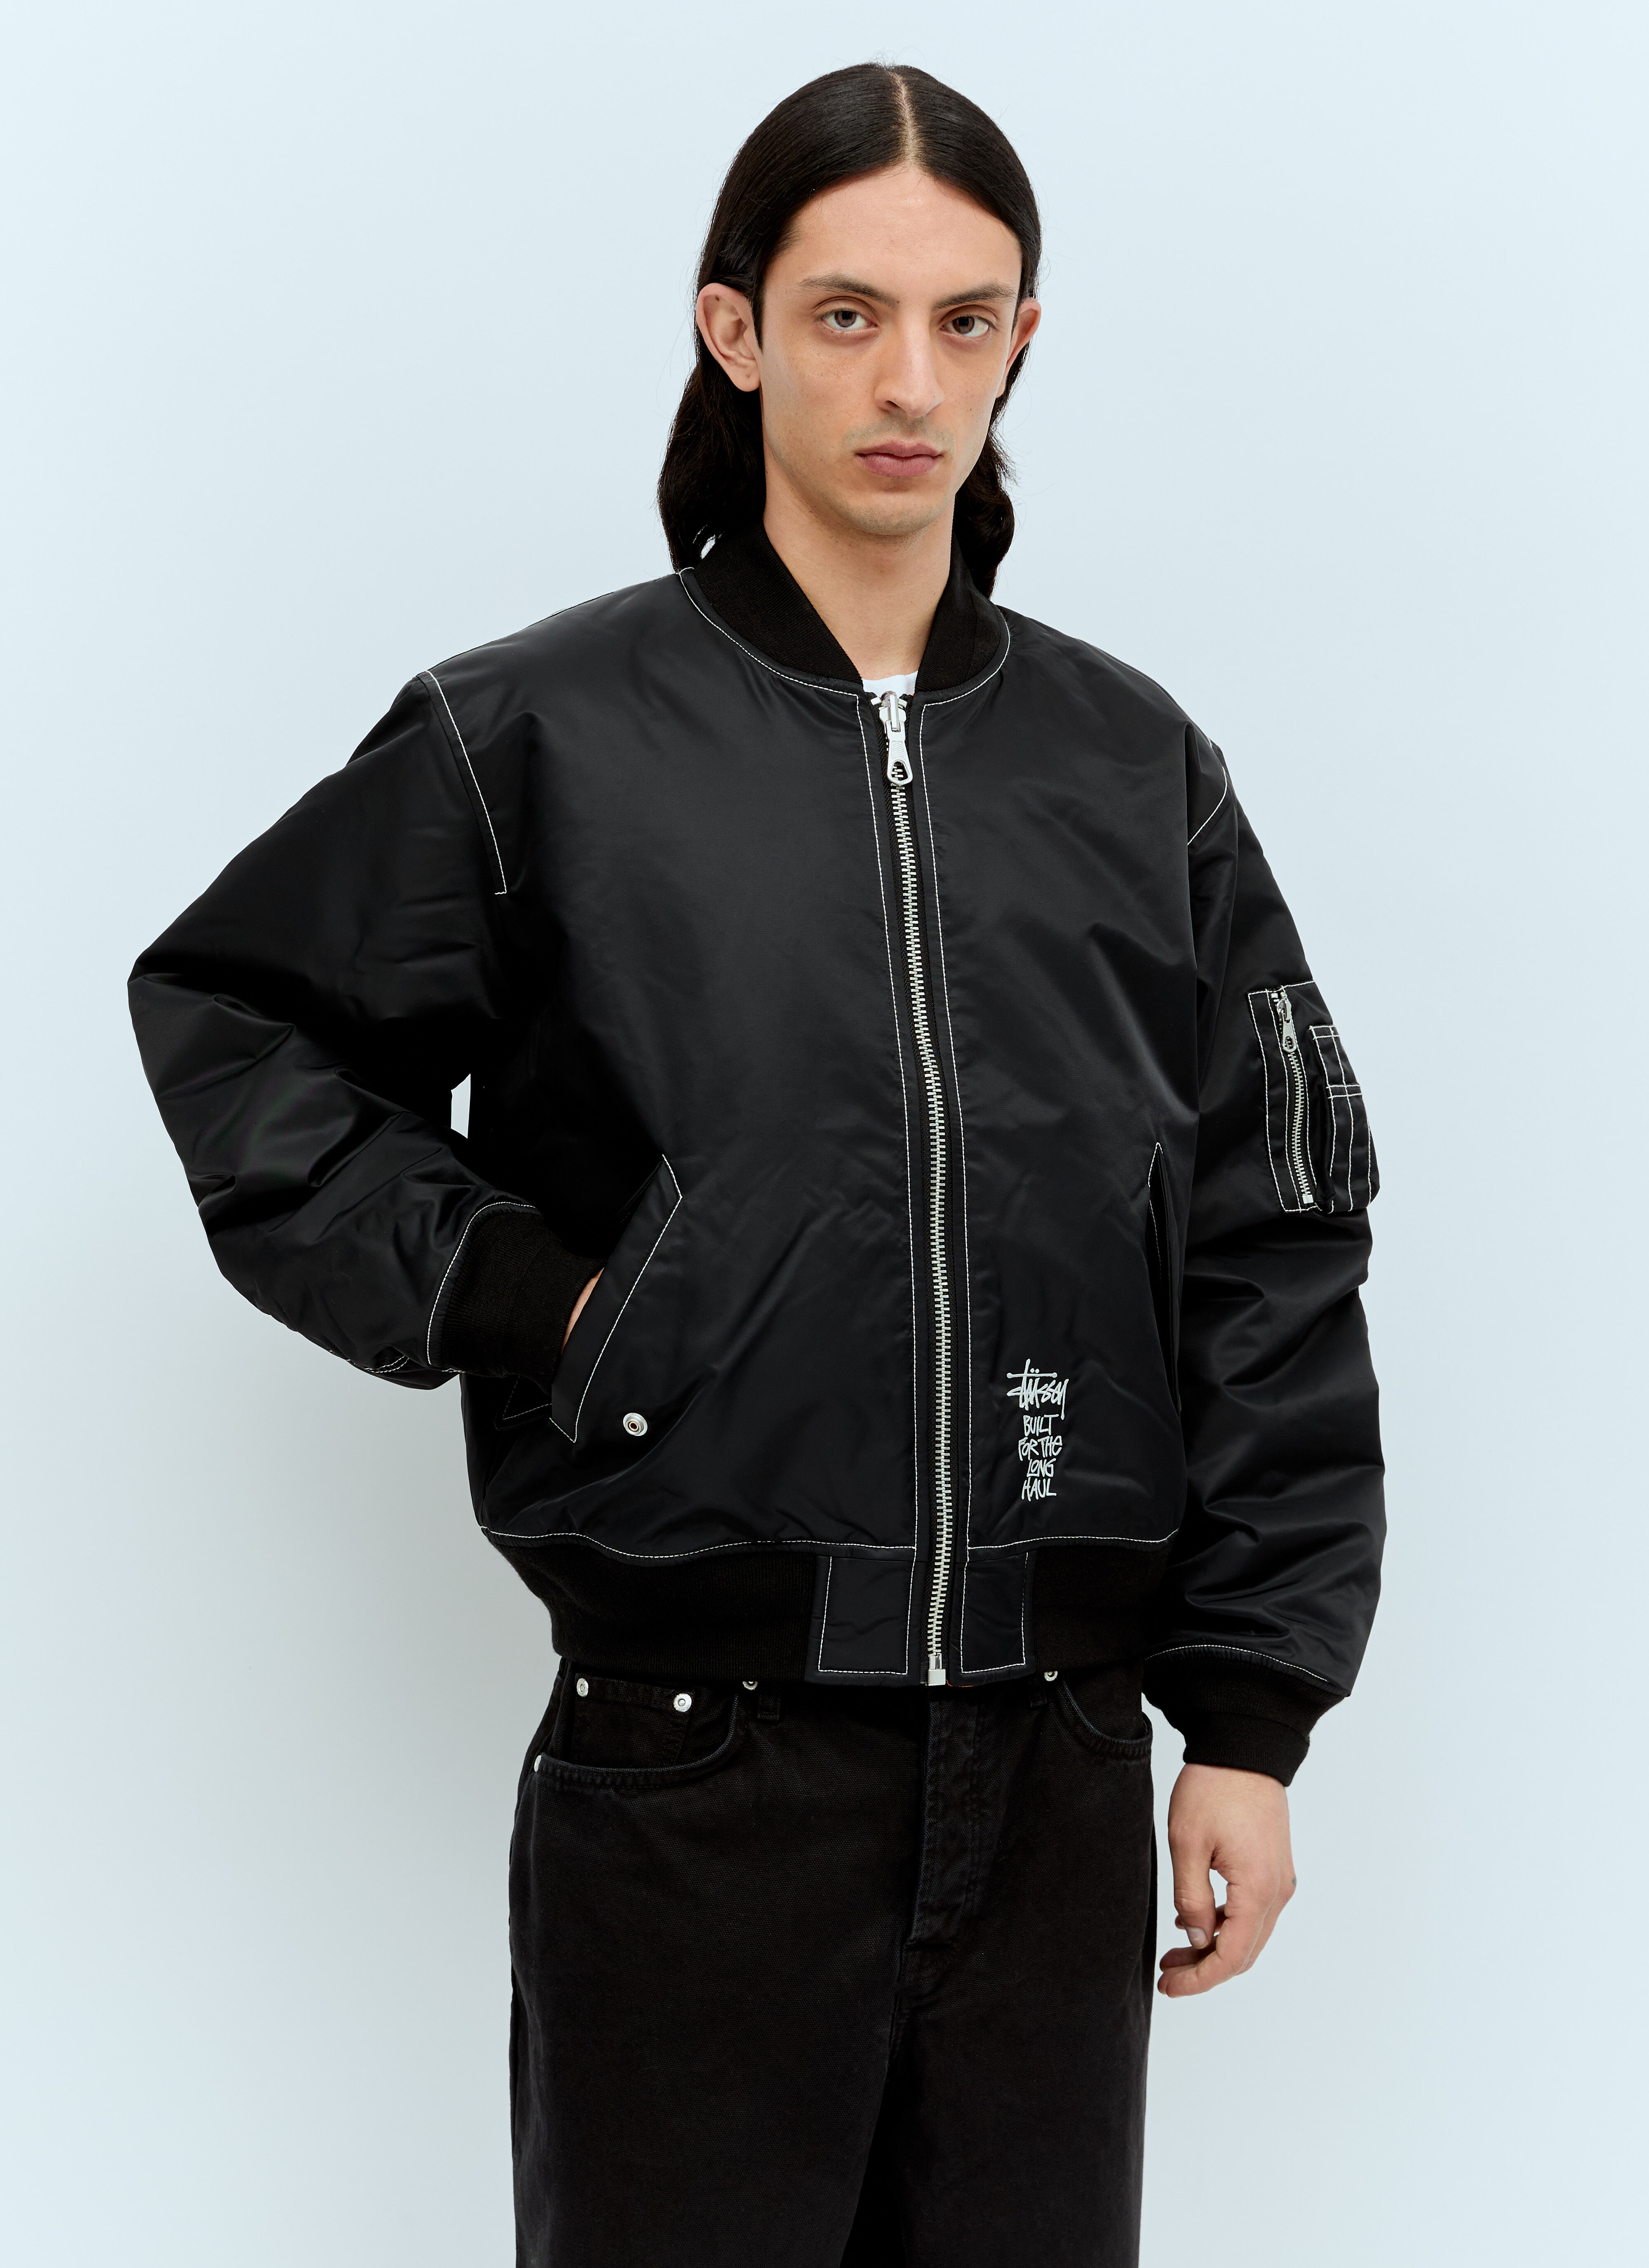 Moncler x Roc Nation designed by Jay-Z Built Bomber Jacket Beige mrn0156001